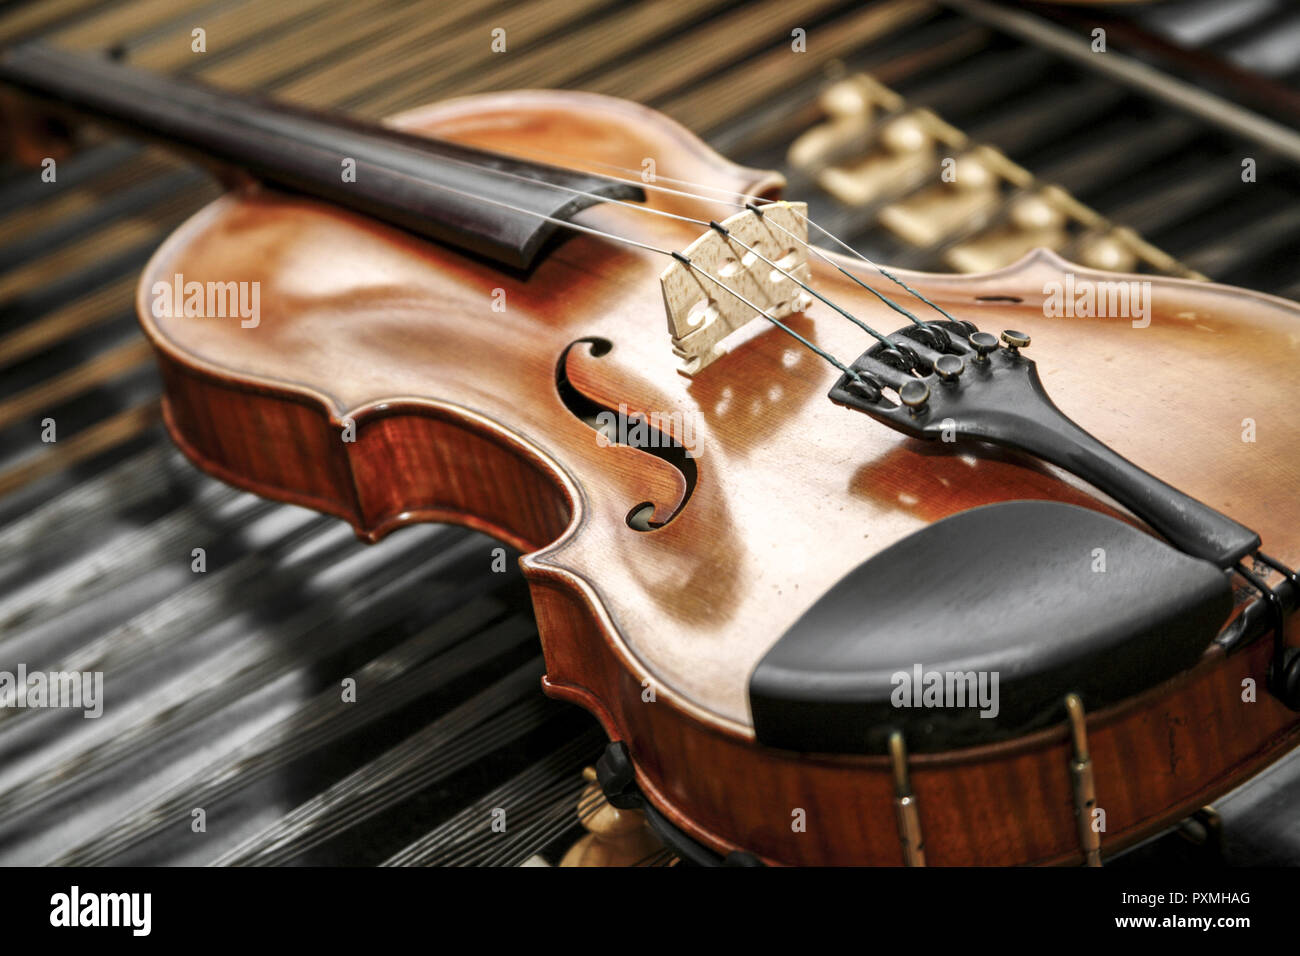 Violine, Detail, Instrument, Streichinstrument, Saiteninstrument, Geige, Halbgeige, Resonanzkoerper, Saiten, Konze Stock - Alamy